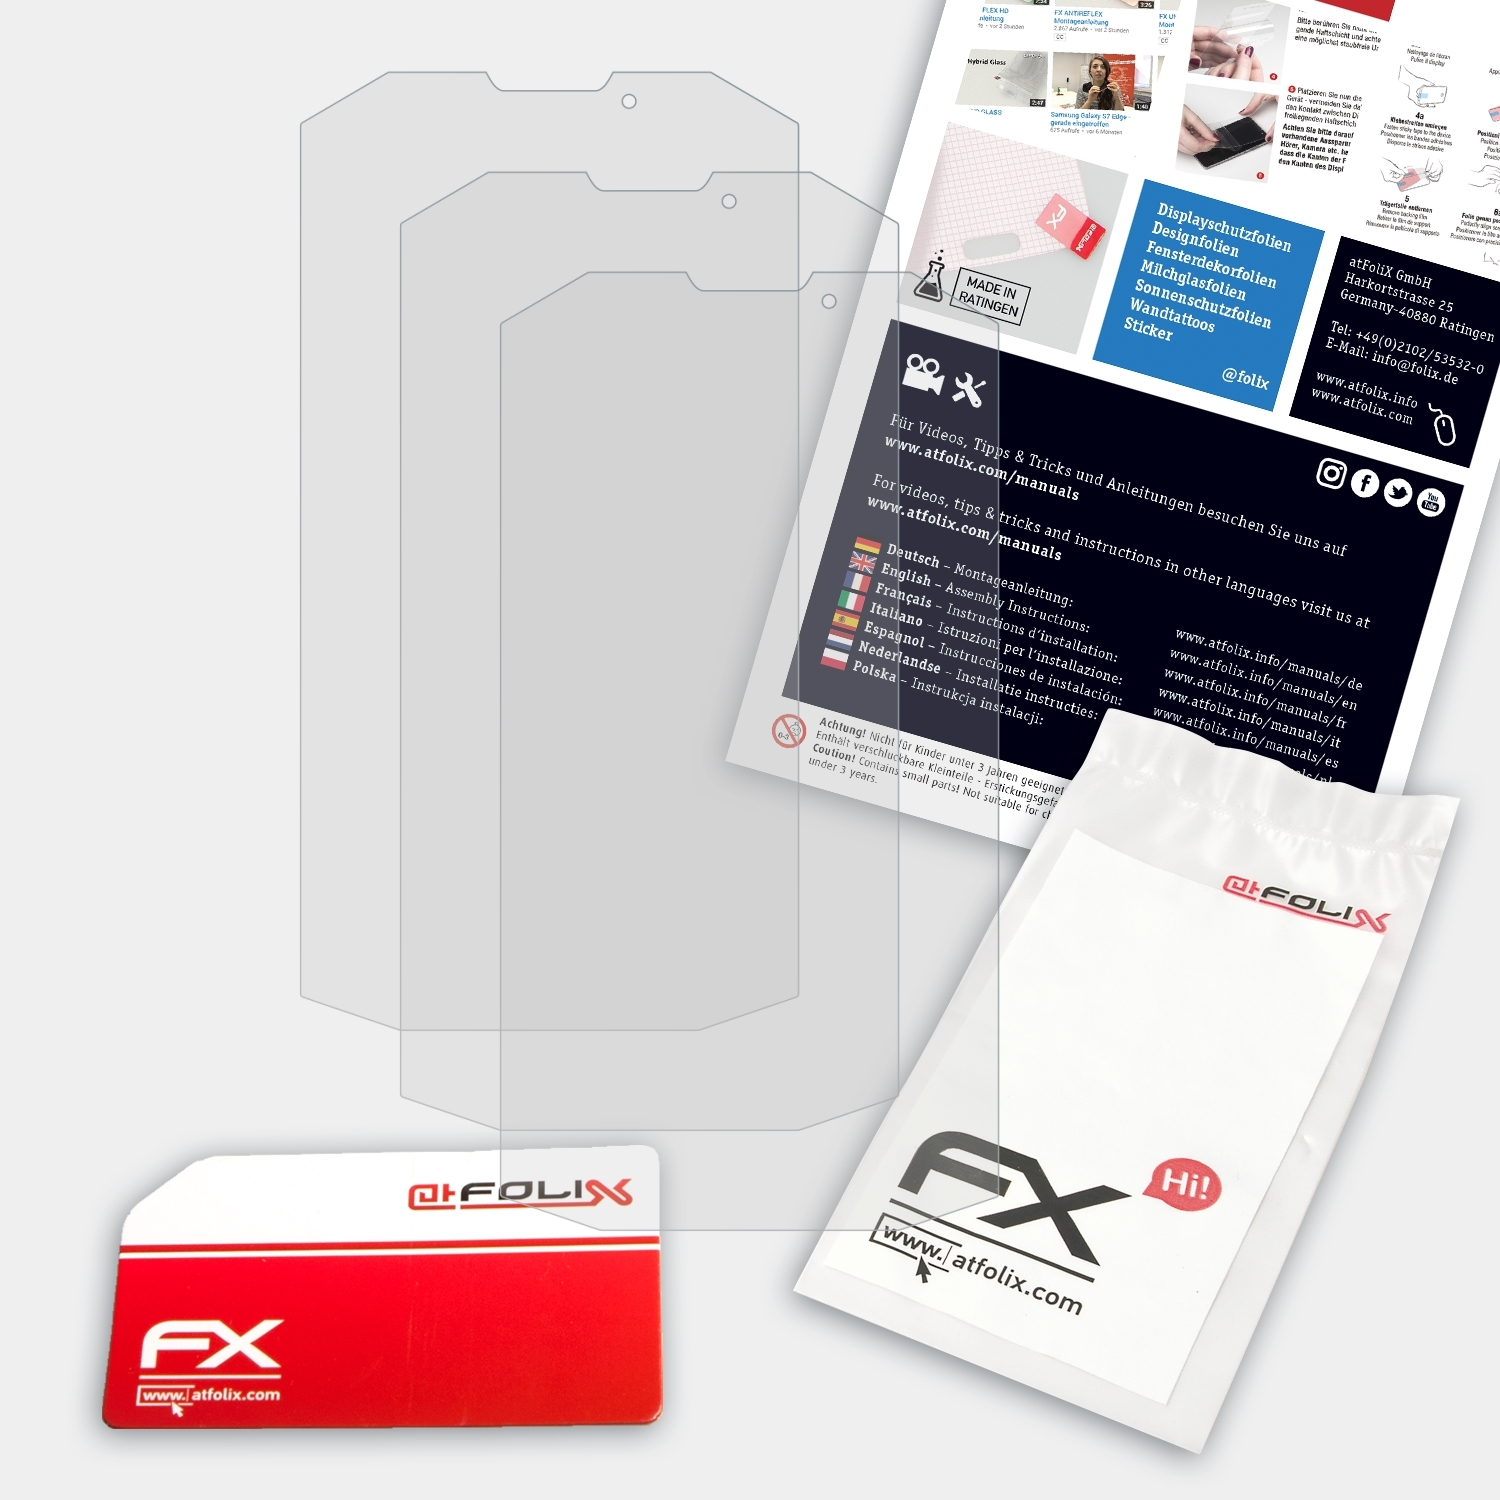 FX-Antireflex 400 Displayschutz(für Energy LTE) Energizer 3x ATFOLIX